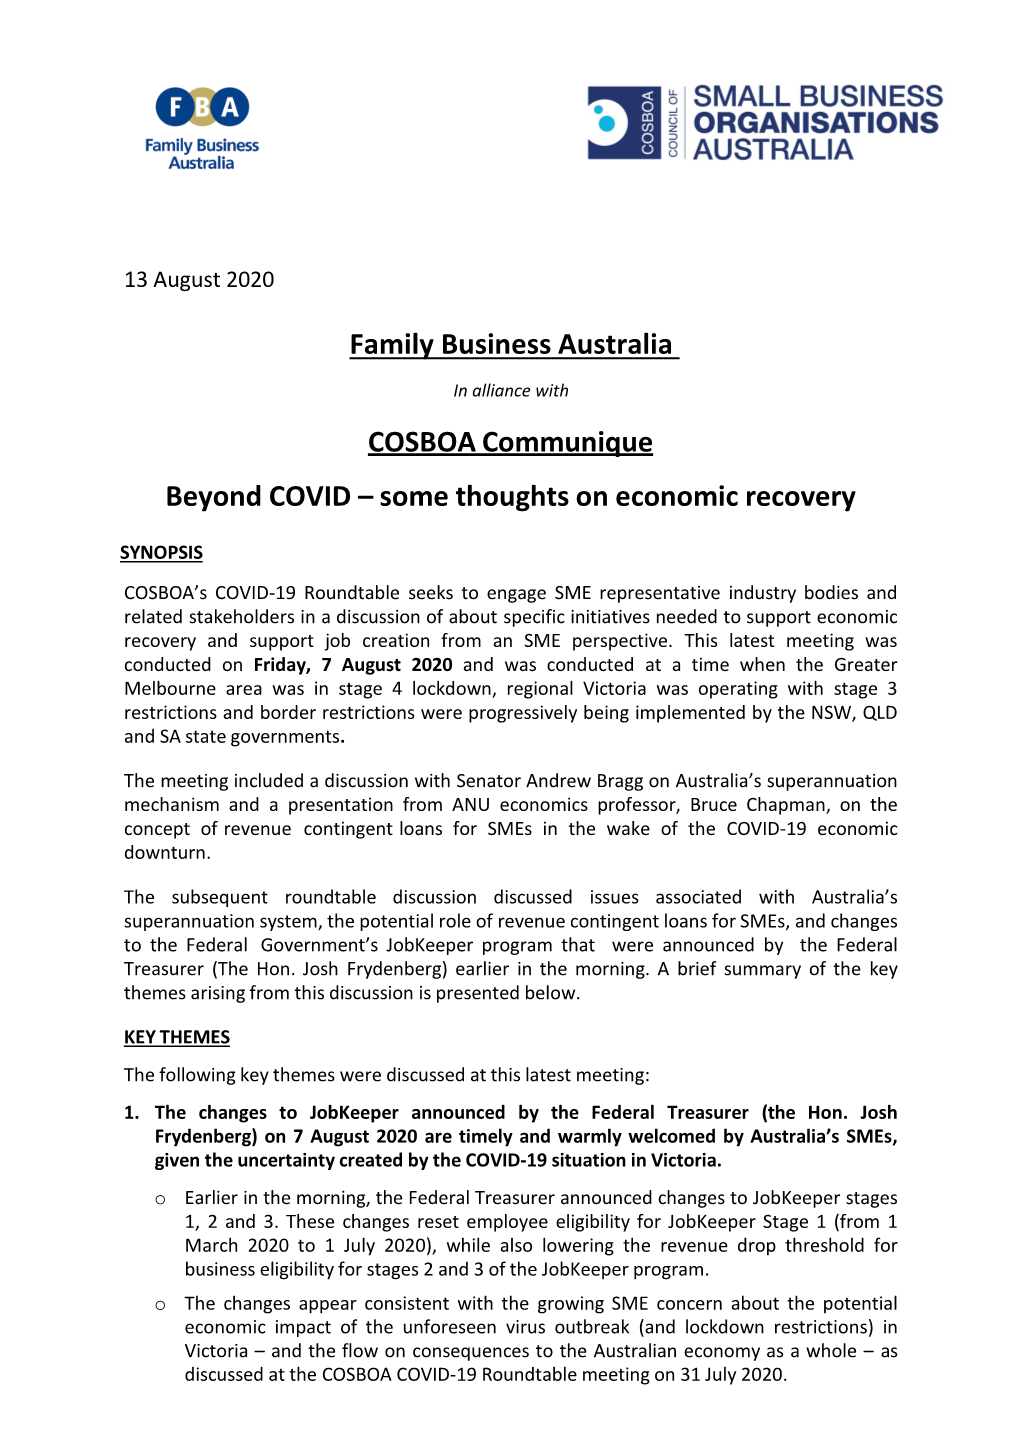 Family Business Australia COSBOA Communique Beyond COVID